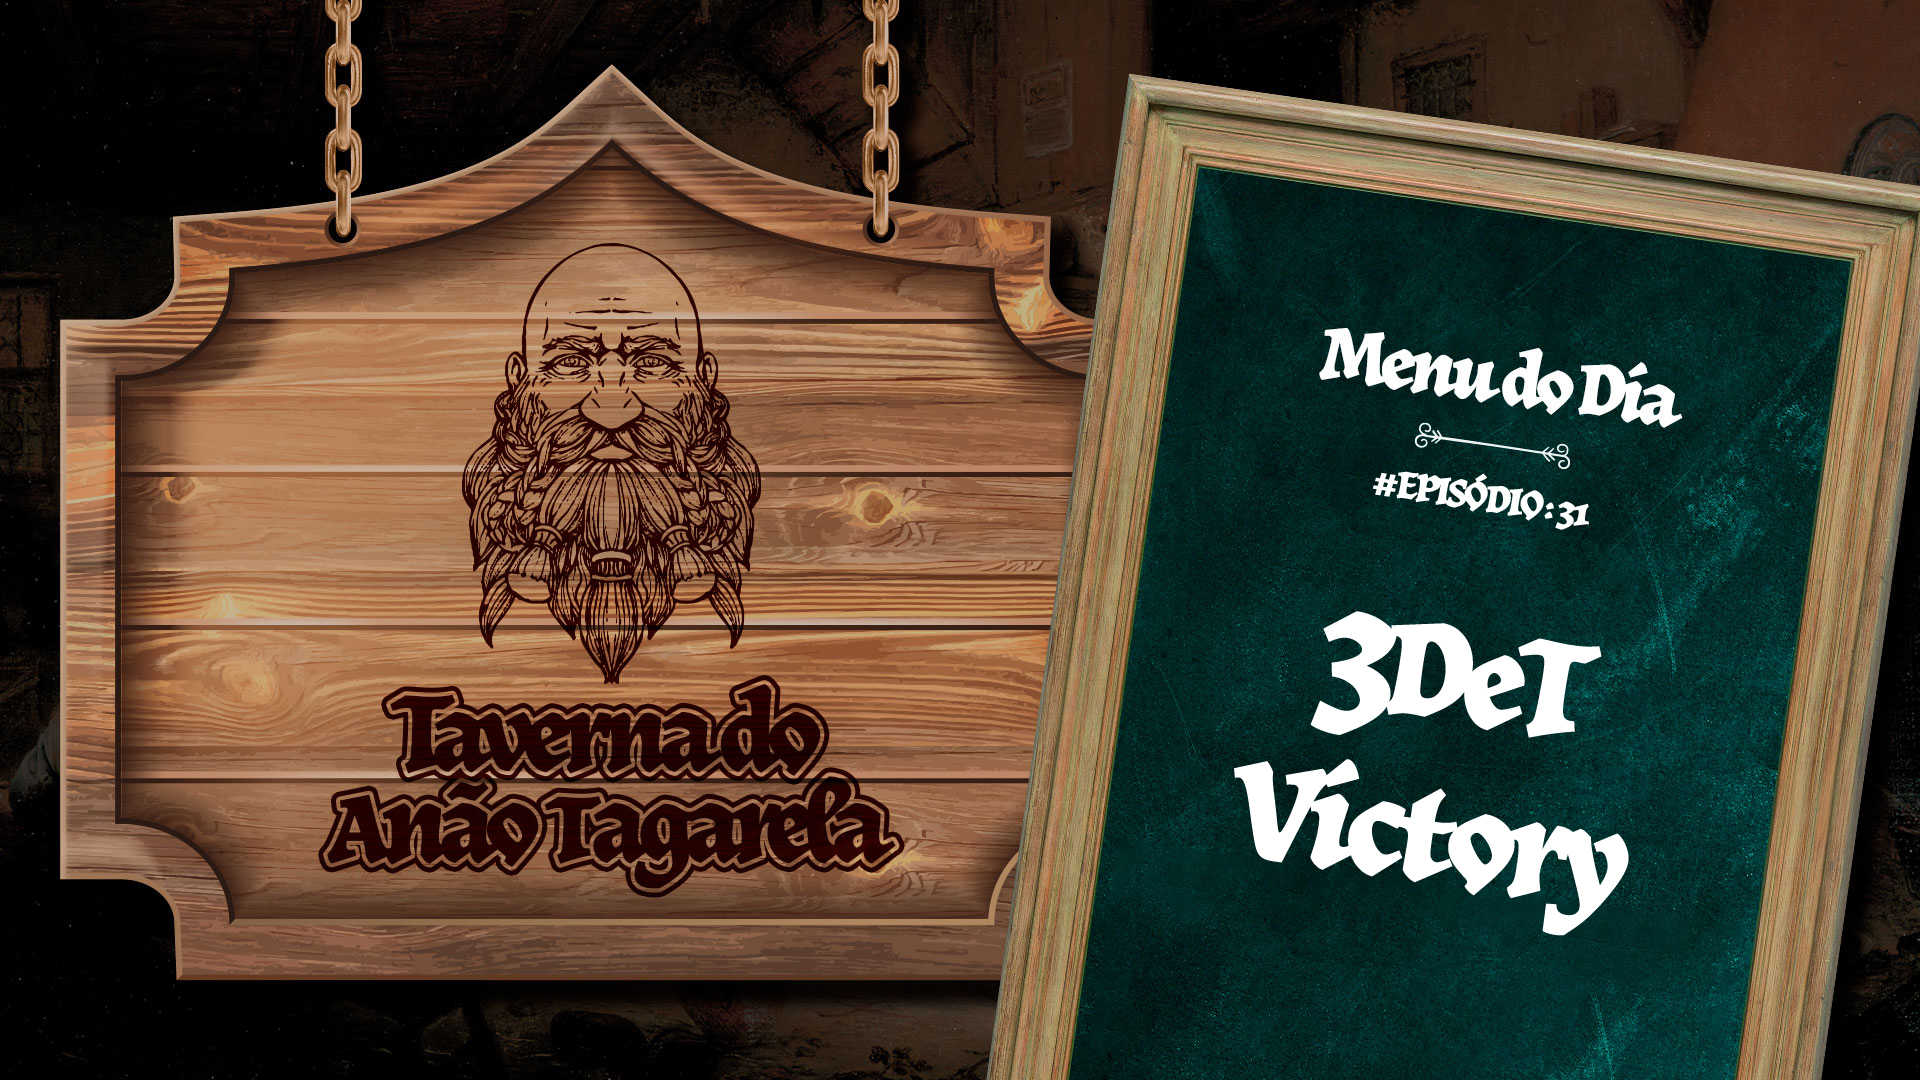 3DeT Victory – Taverna do Anão Tagarela #31